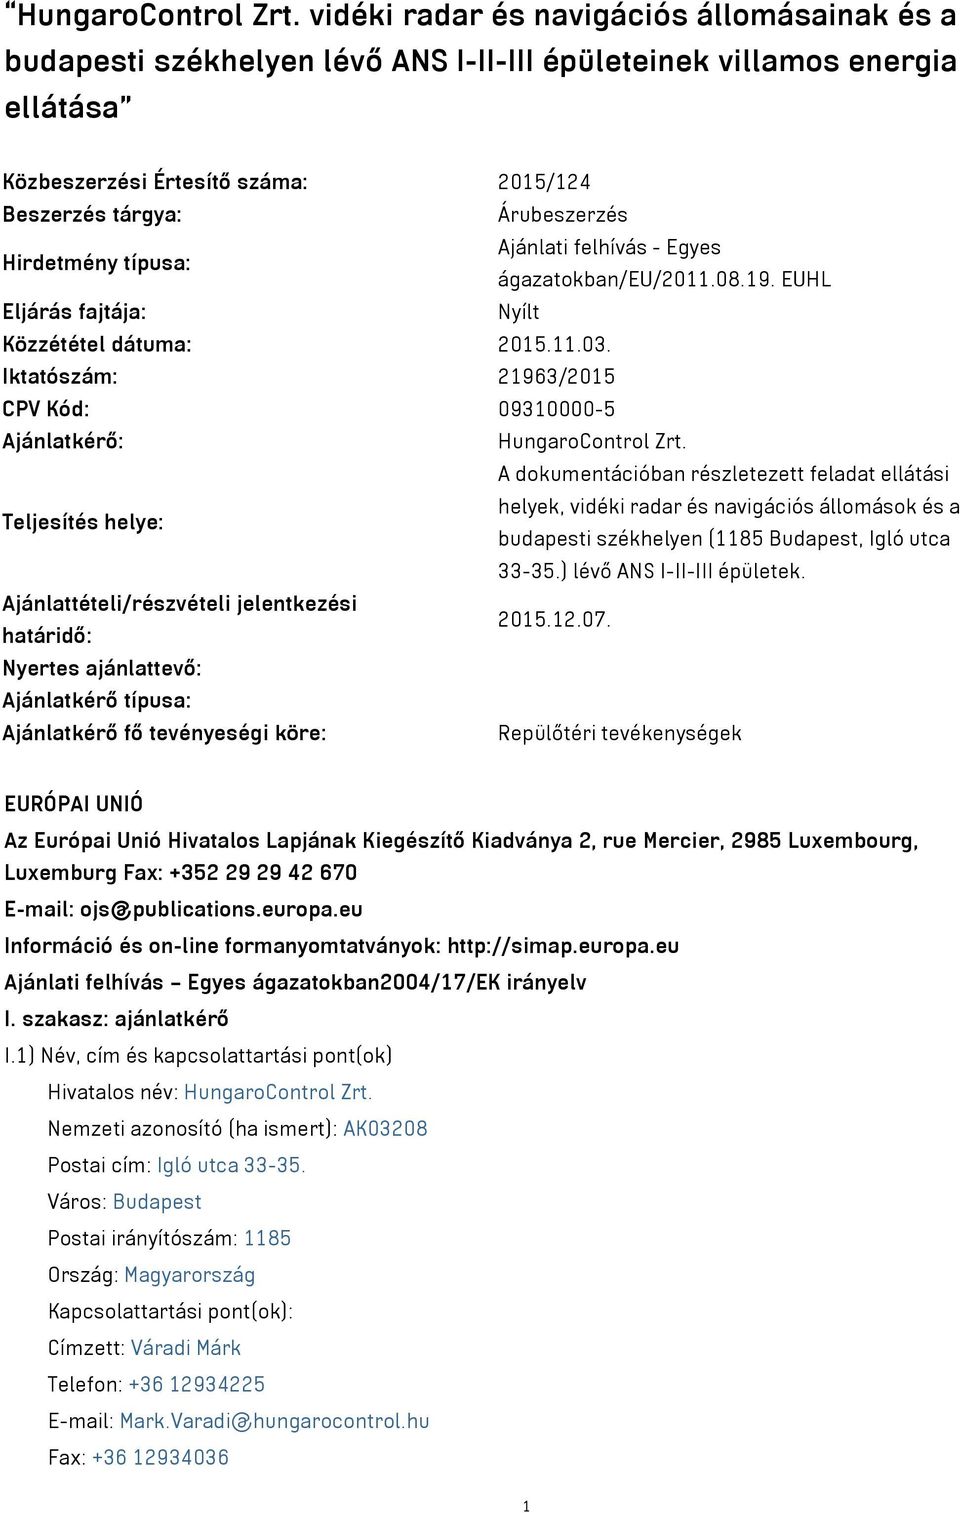 Hirdetmény típusa: Ajánlati felhívás - Egyes ágazatokban/eu/2011.08.19. EUHL Eljárás fajtája: Nyílt Közzététel dátuma: 2015.11.03.